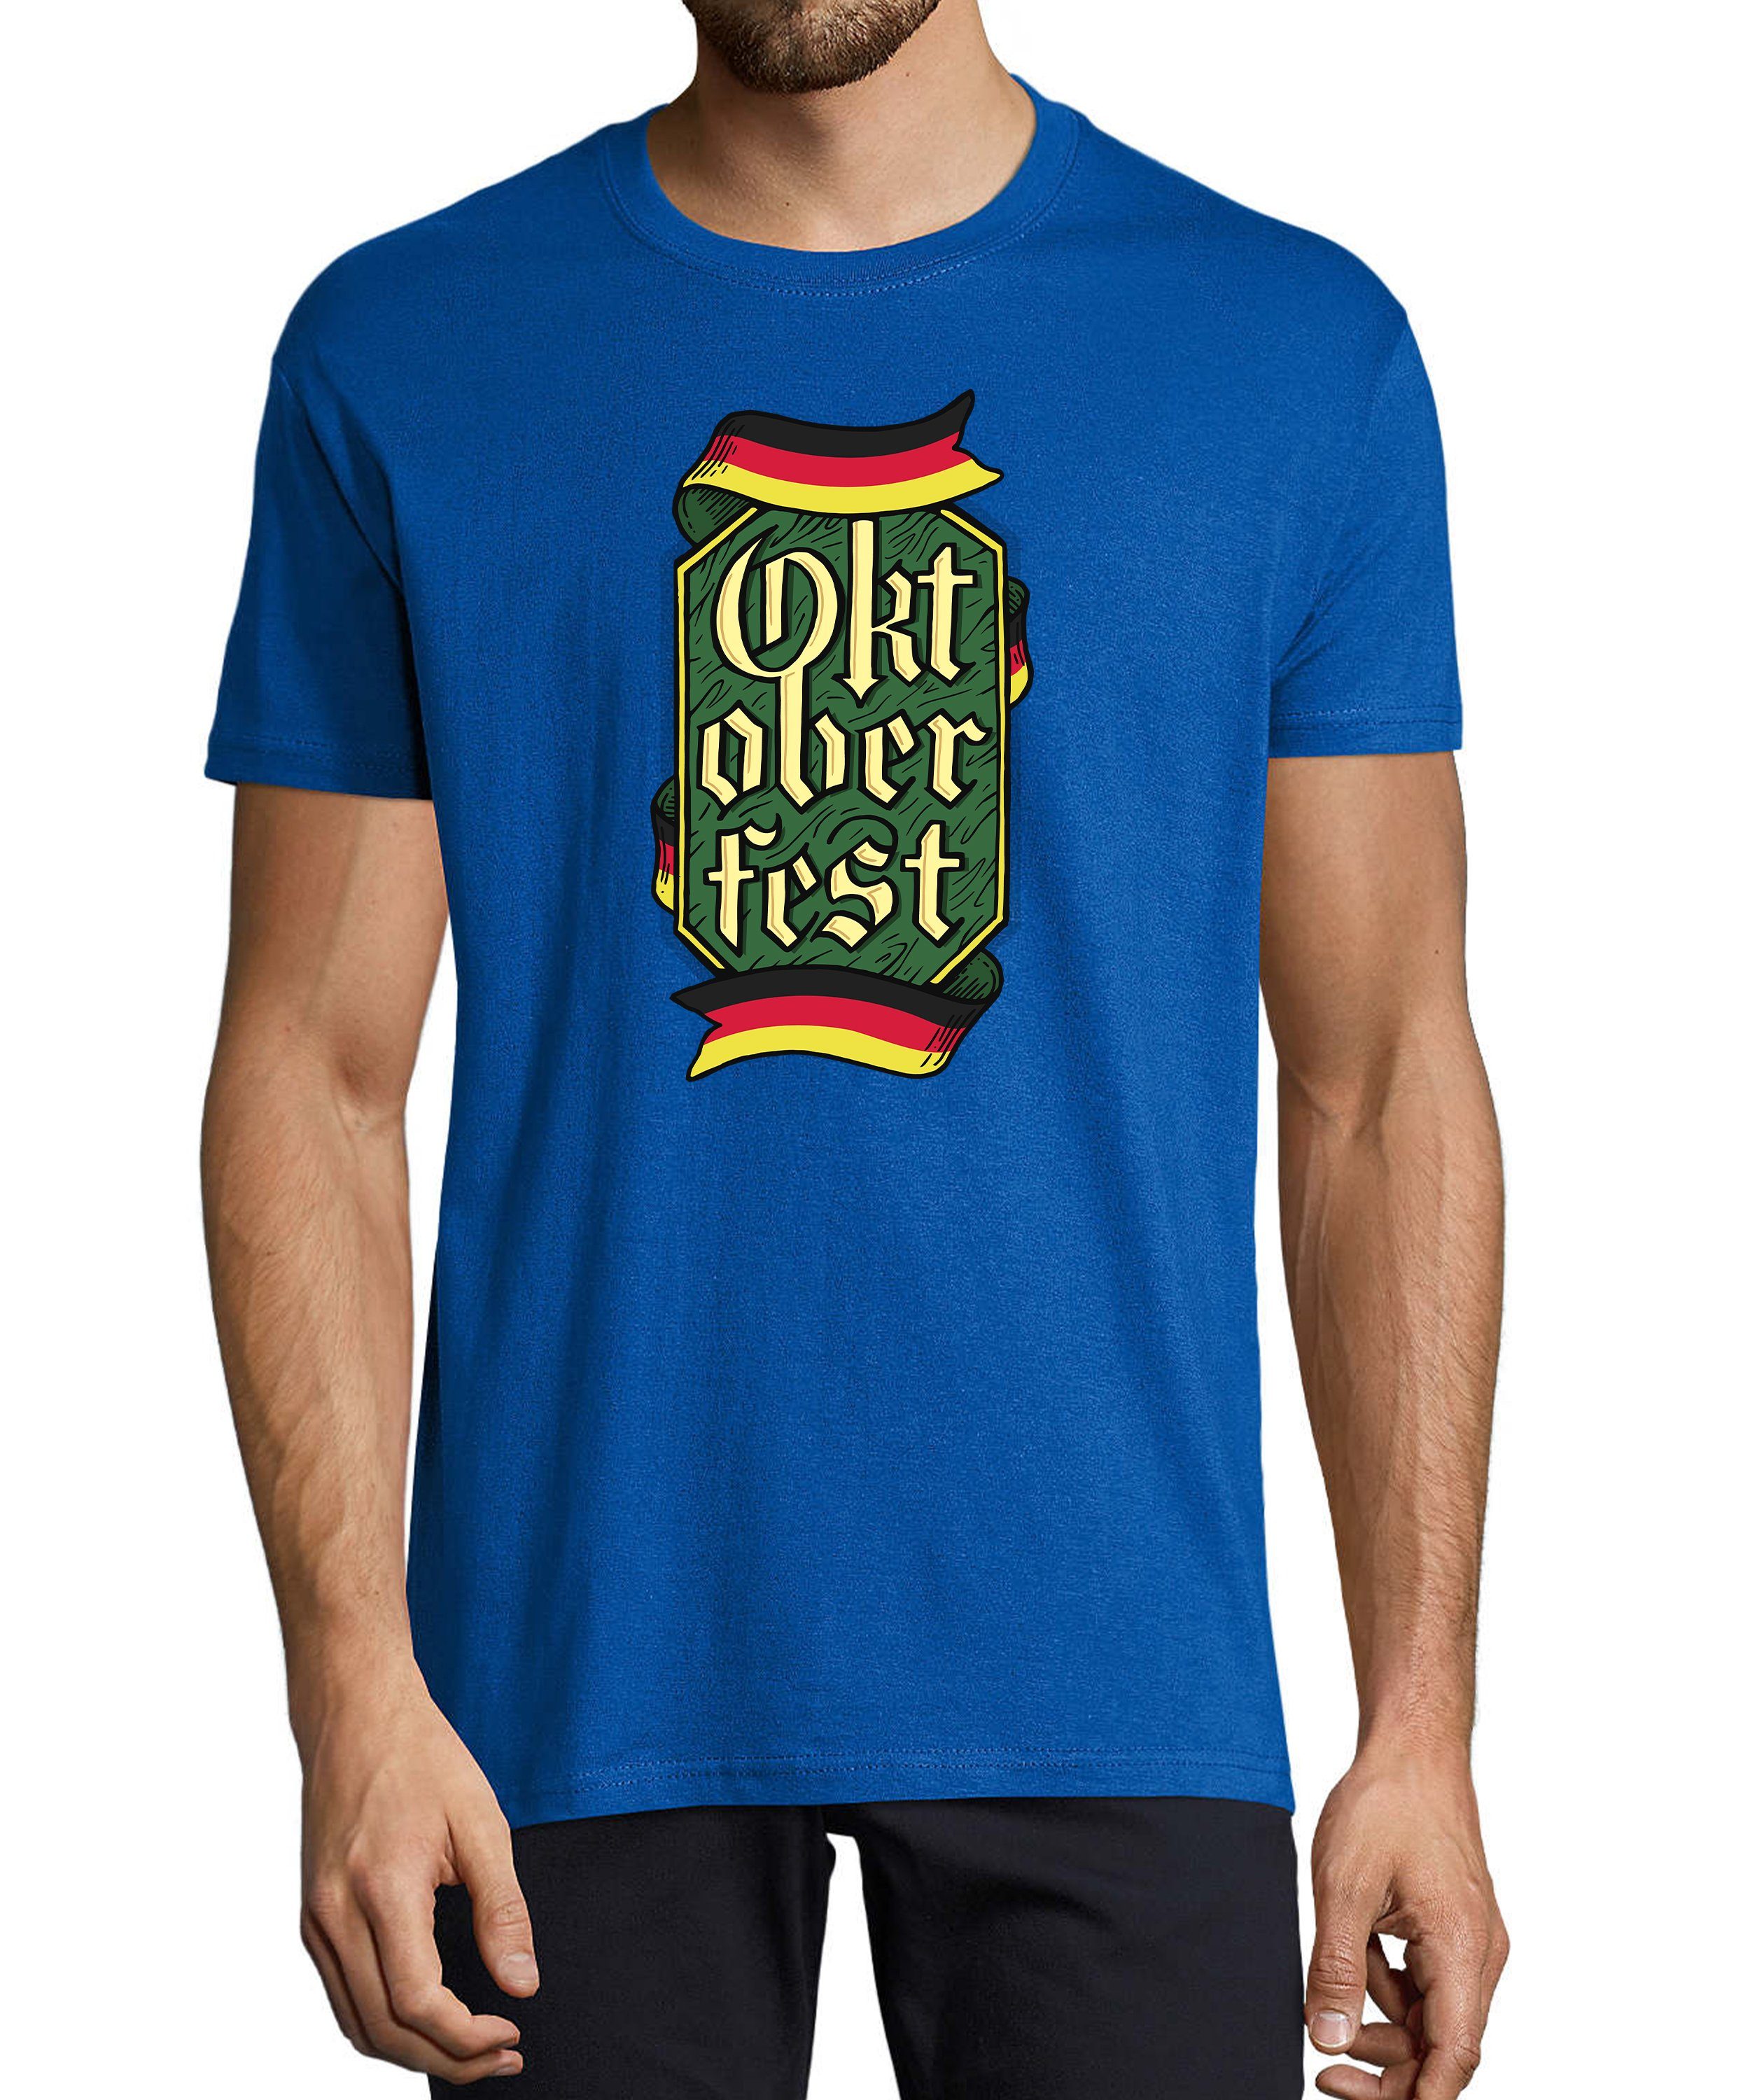 MyDesign24 T-Shirt Herren Party Shirt - Trinkshirt Oktoberfest T-Shirt Baumwollshirt mit Aufdruck Regular Fit, i323 royal blau